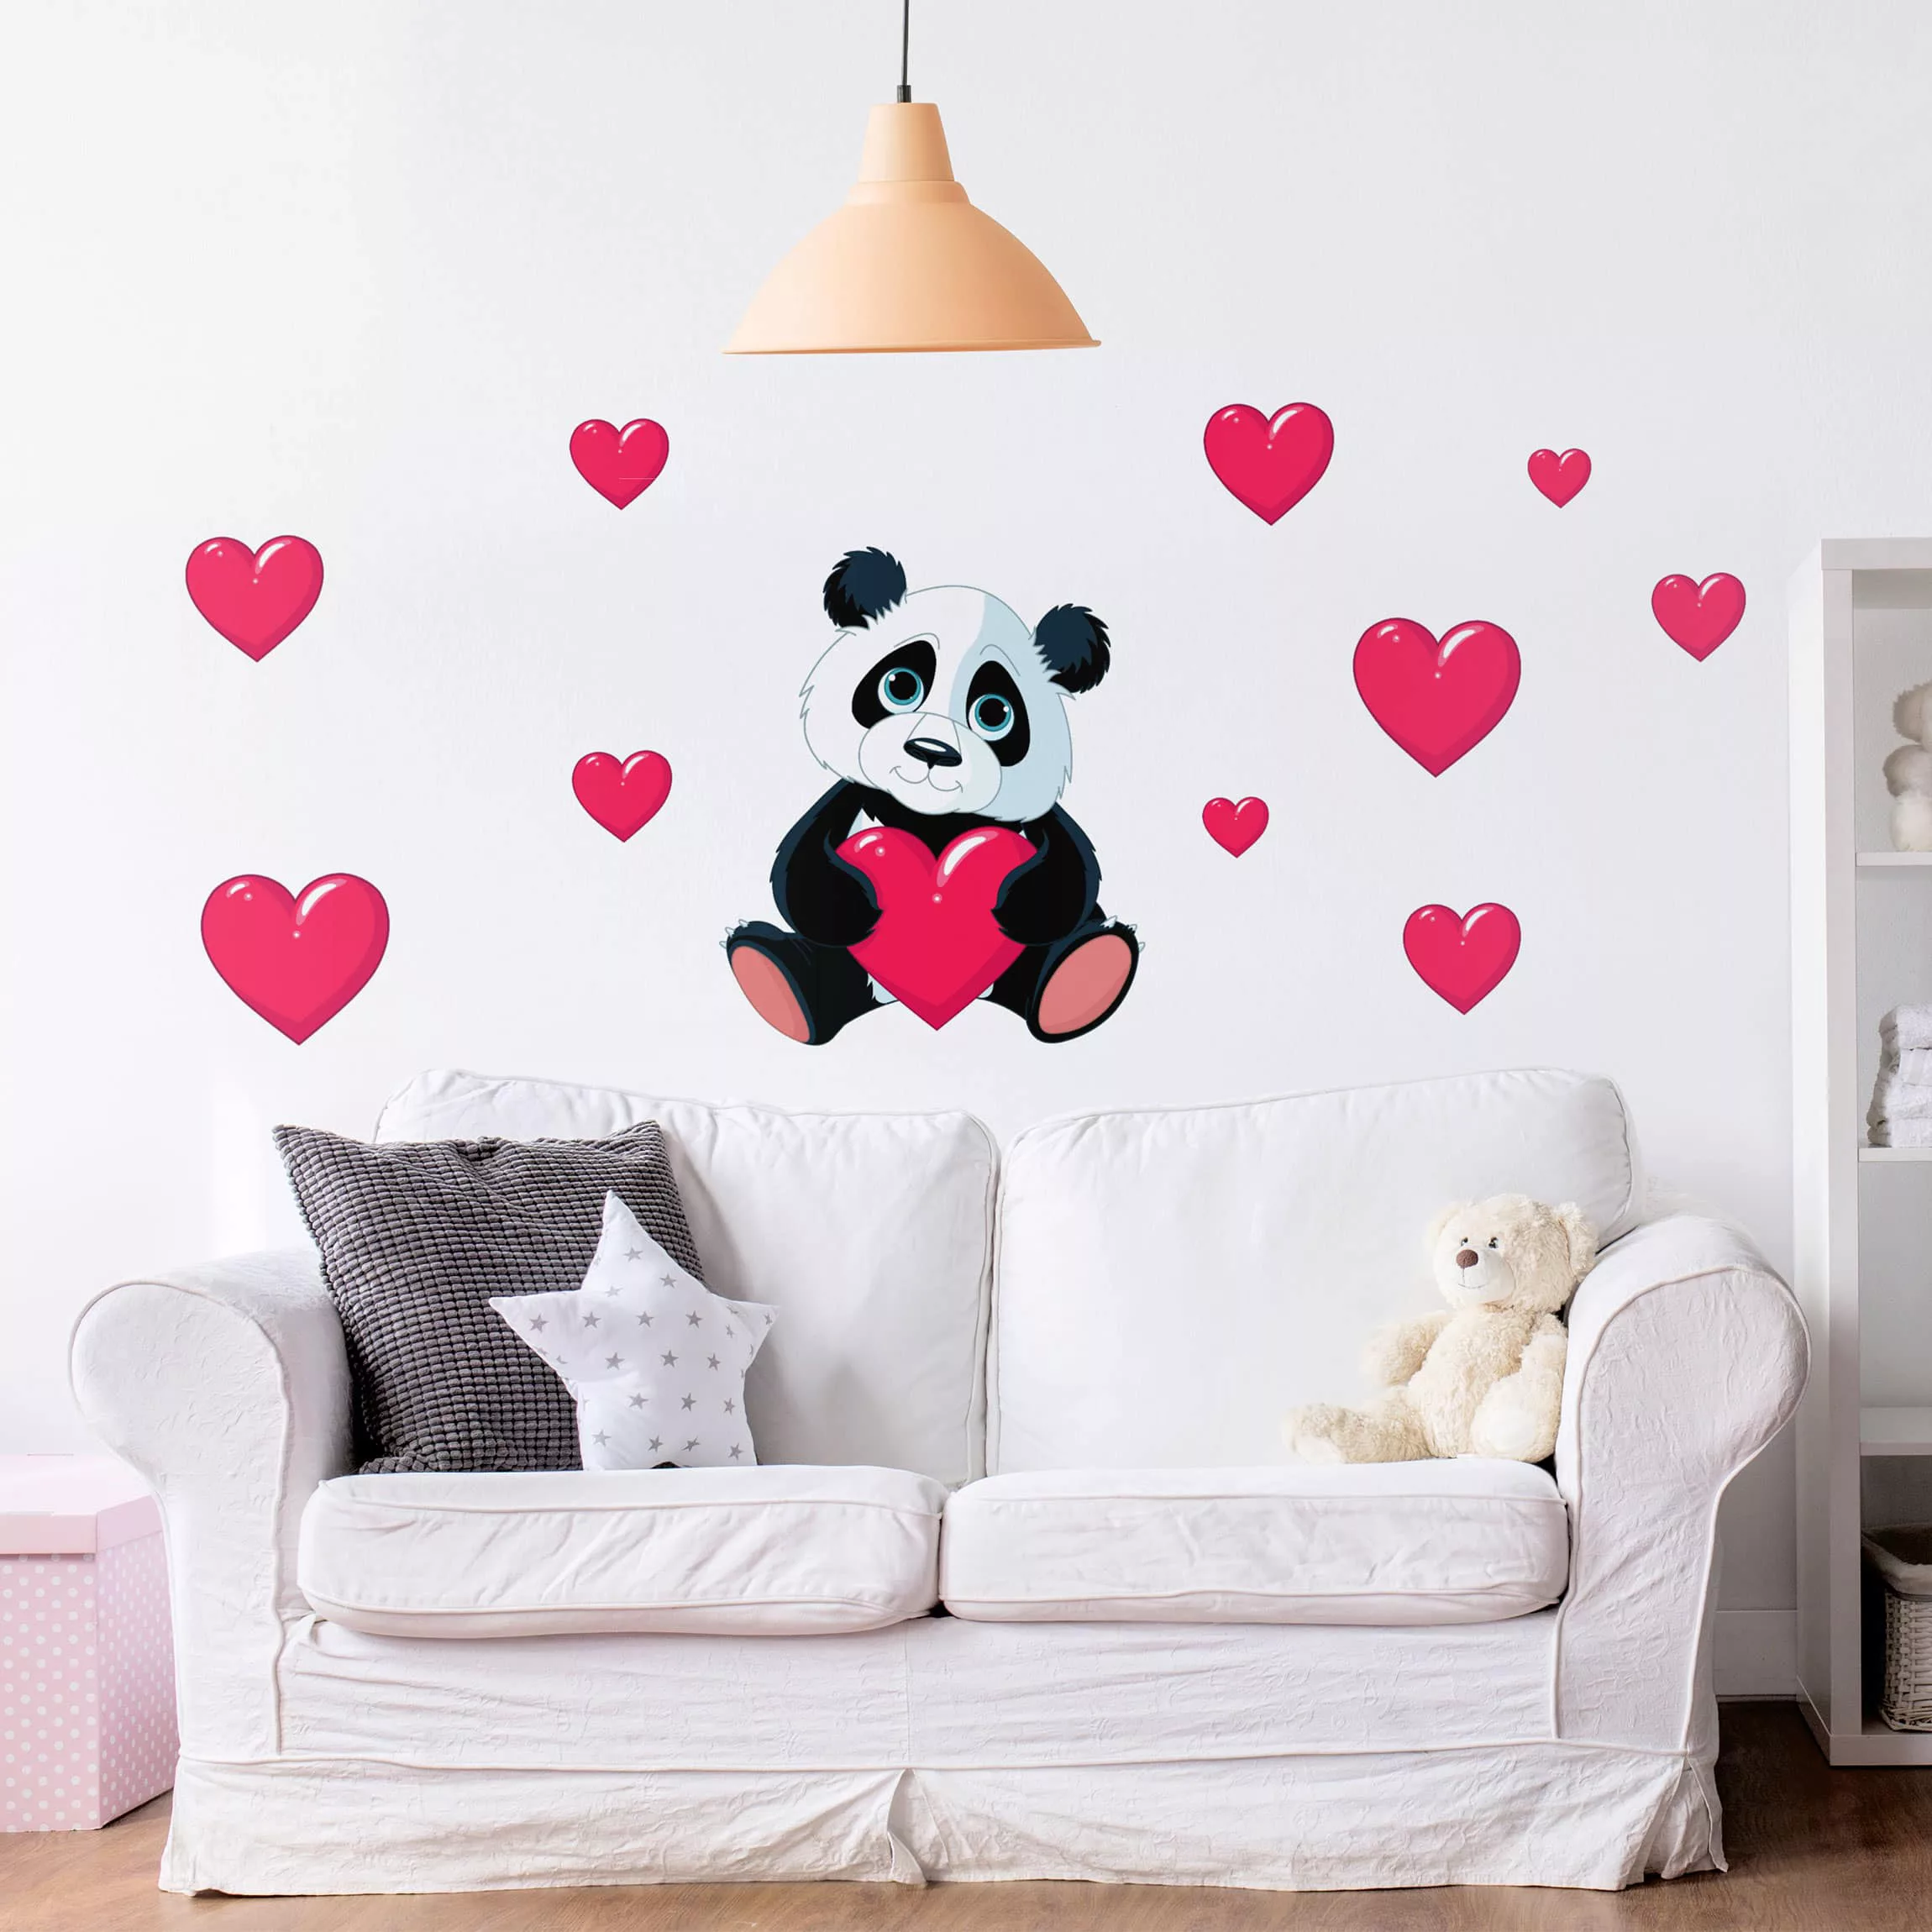 Wandtattoo Kinderzimmer Panda mit Herzen günstig online kaufen